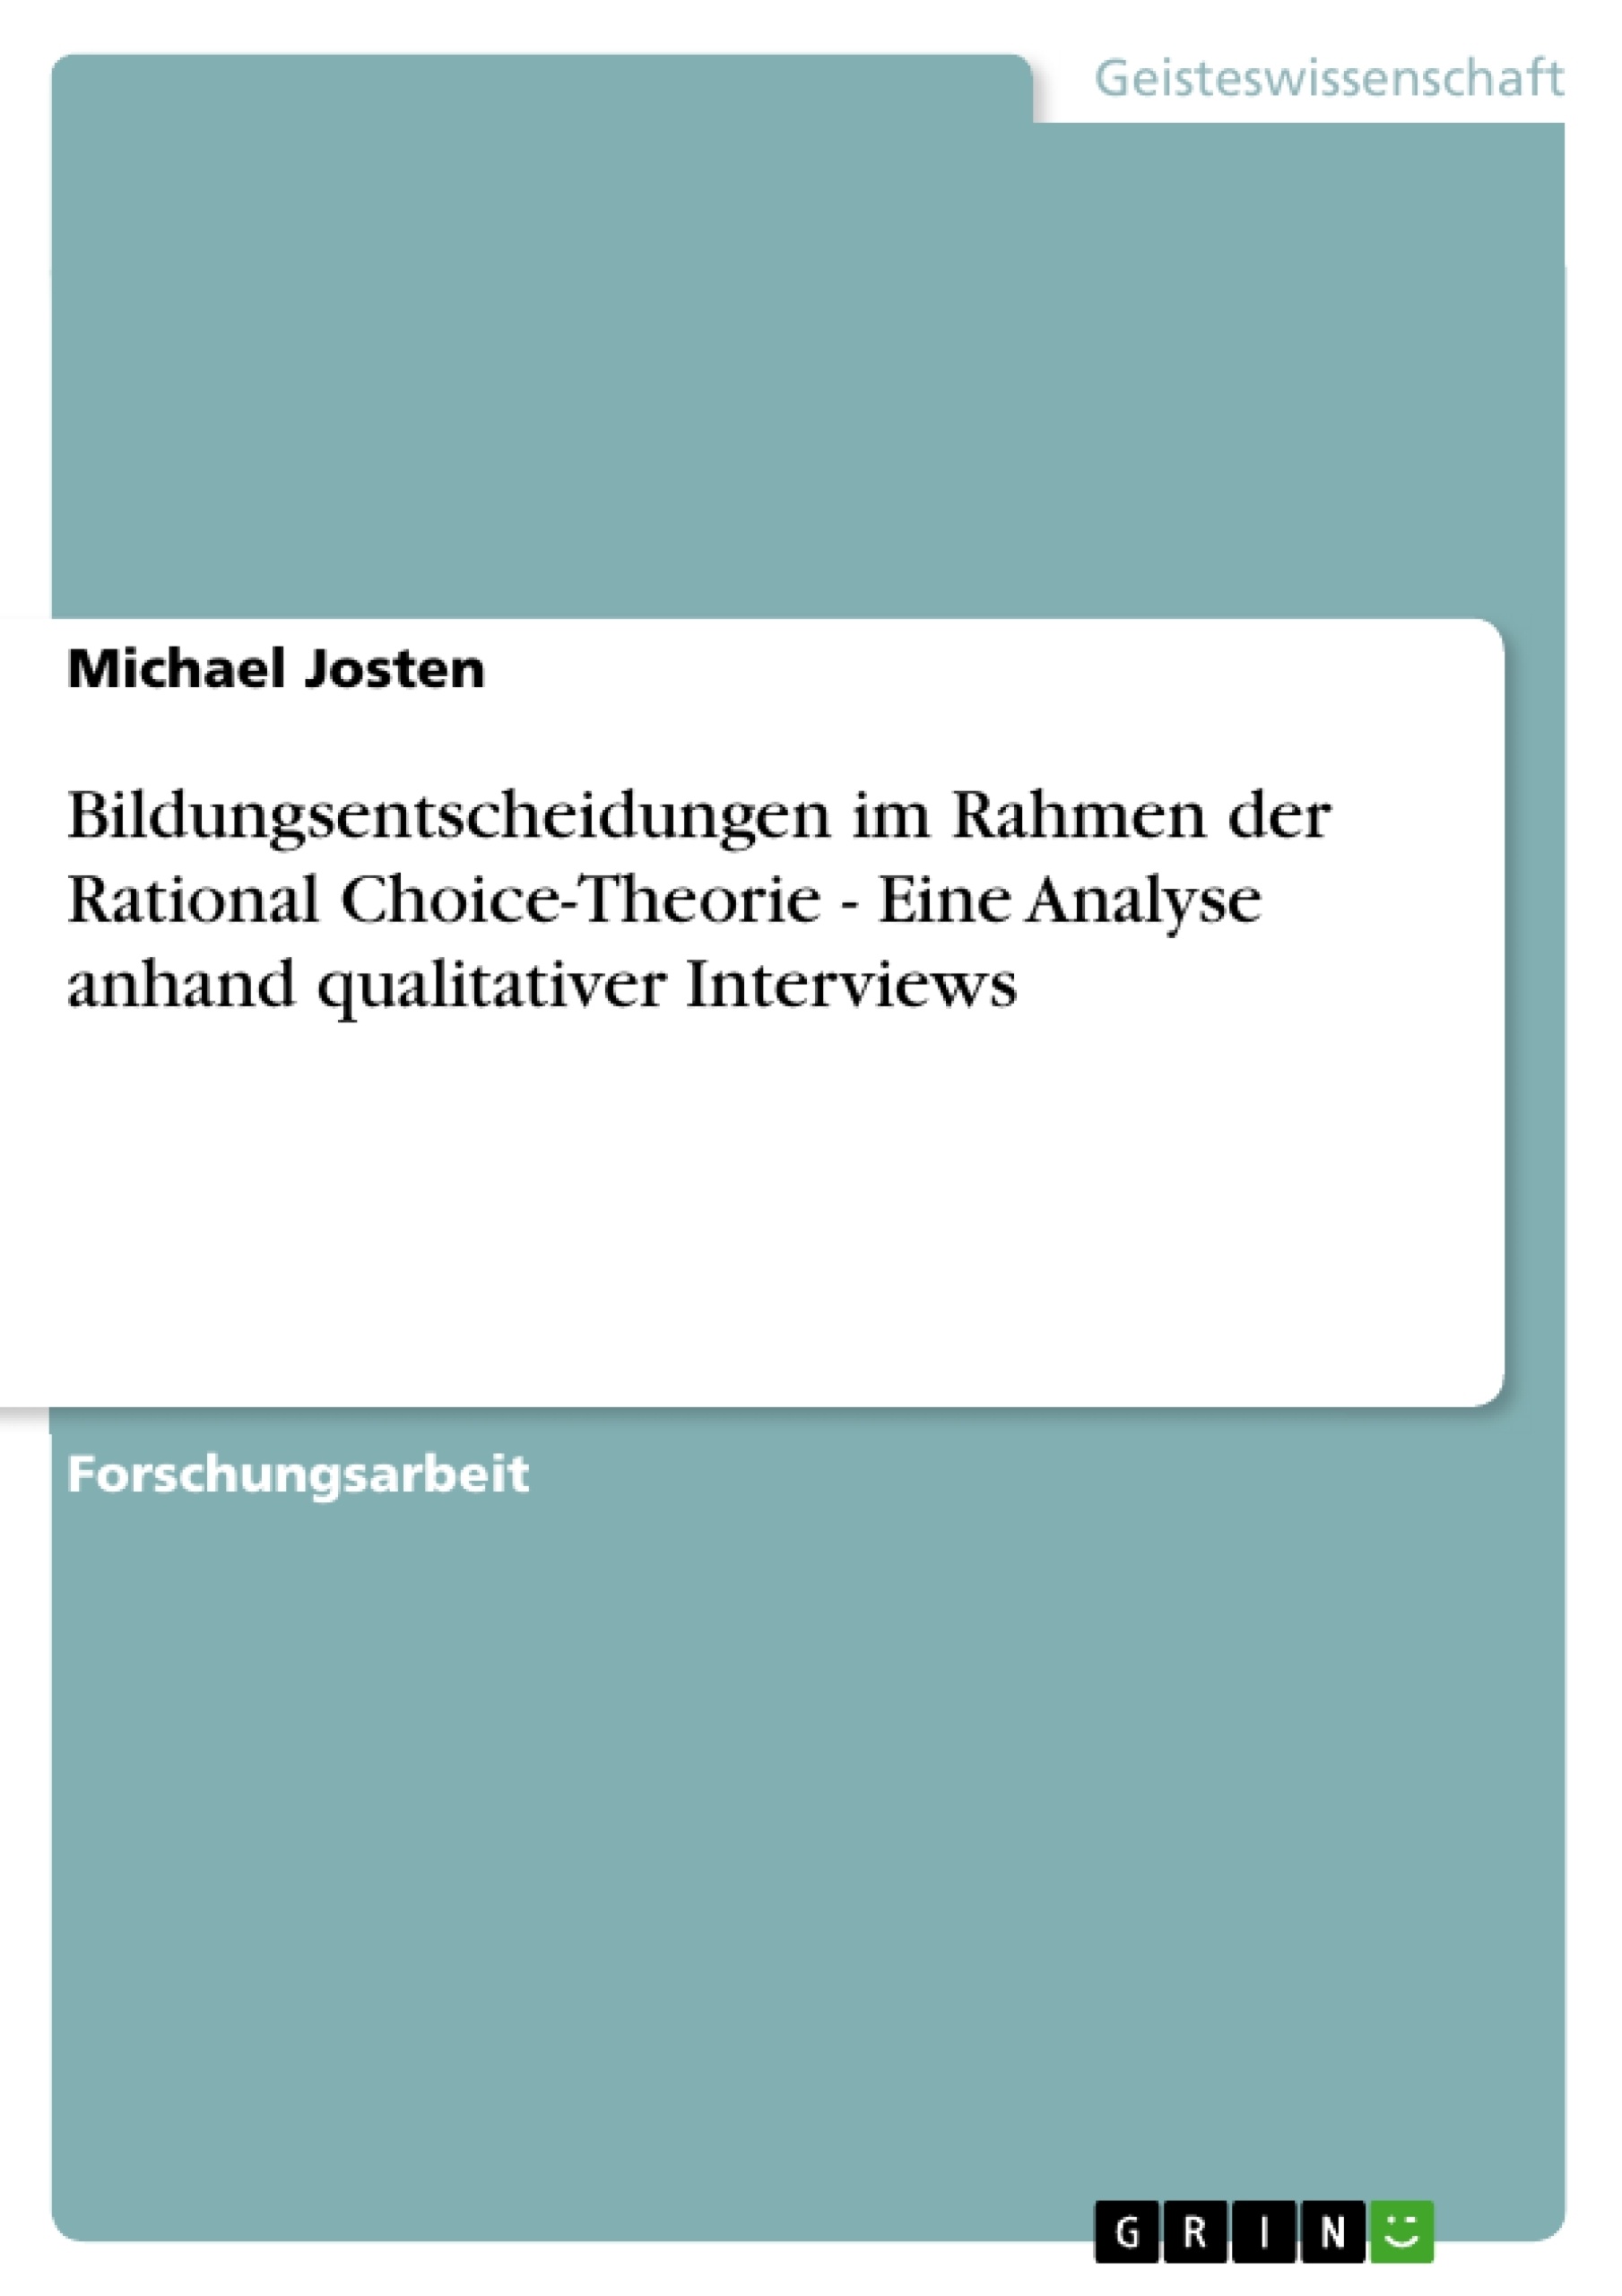 Título: Bildungsentscheidungen im Rahmen der Rational Choice-Theorie - Eine Analyse anhand qualitativer Interviews